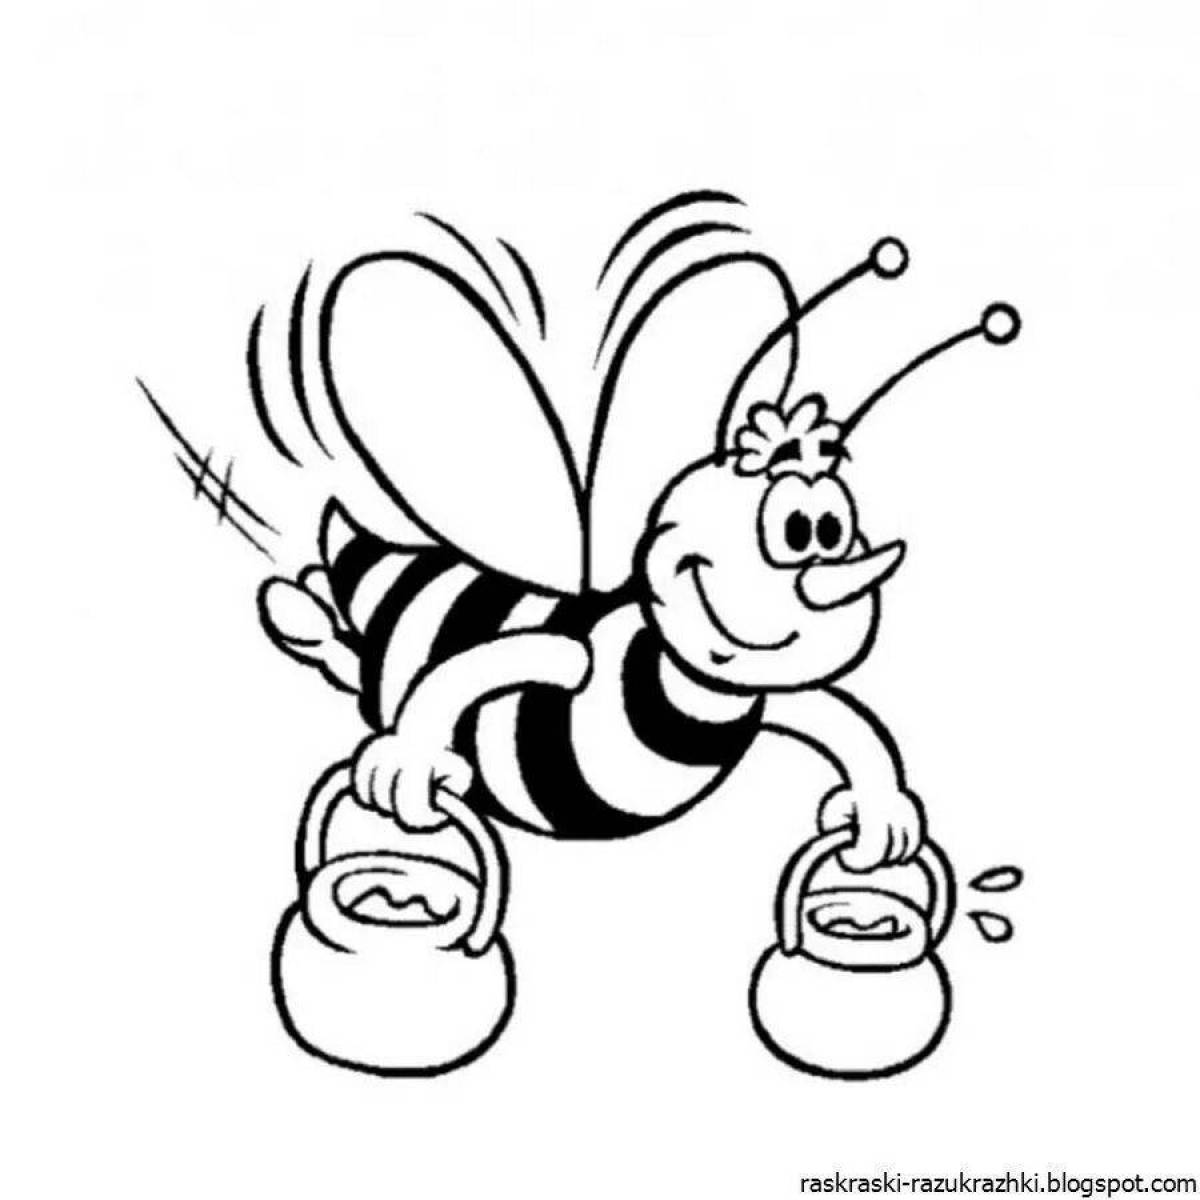 Игривый рисунок пчелы